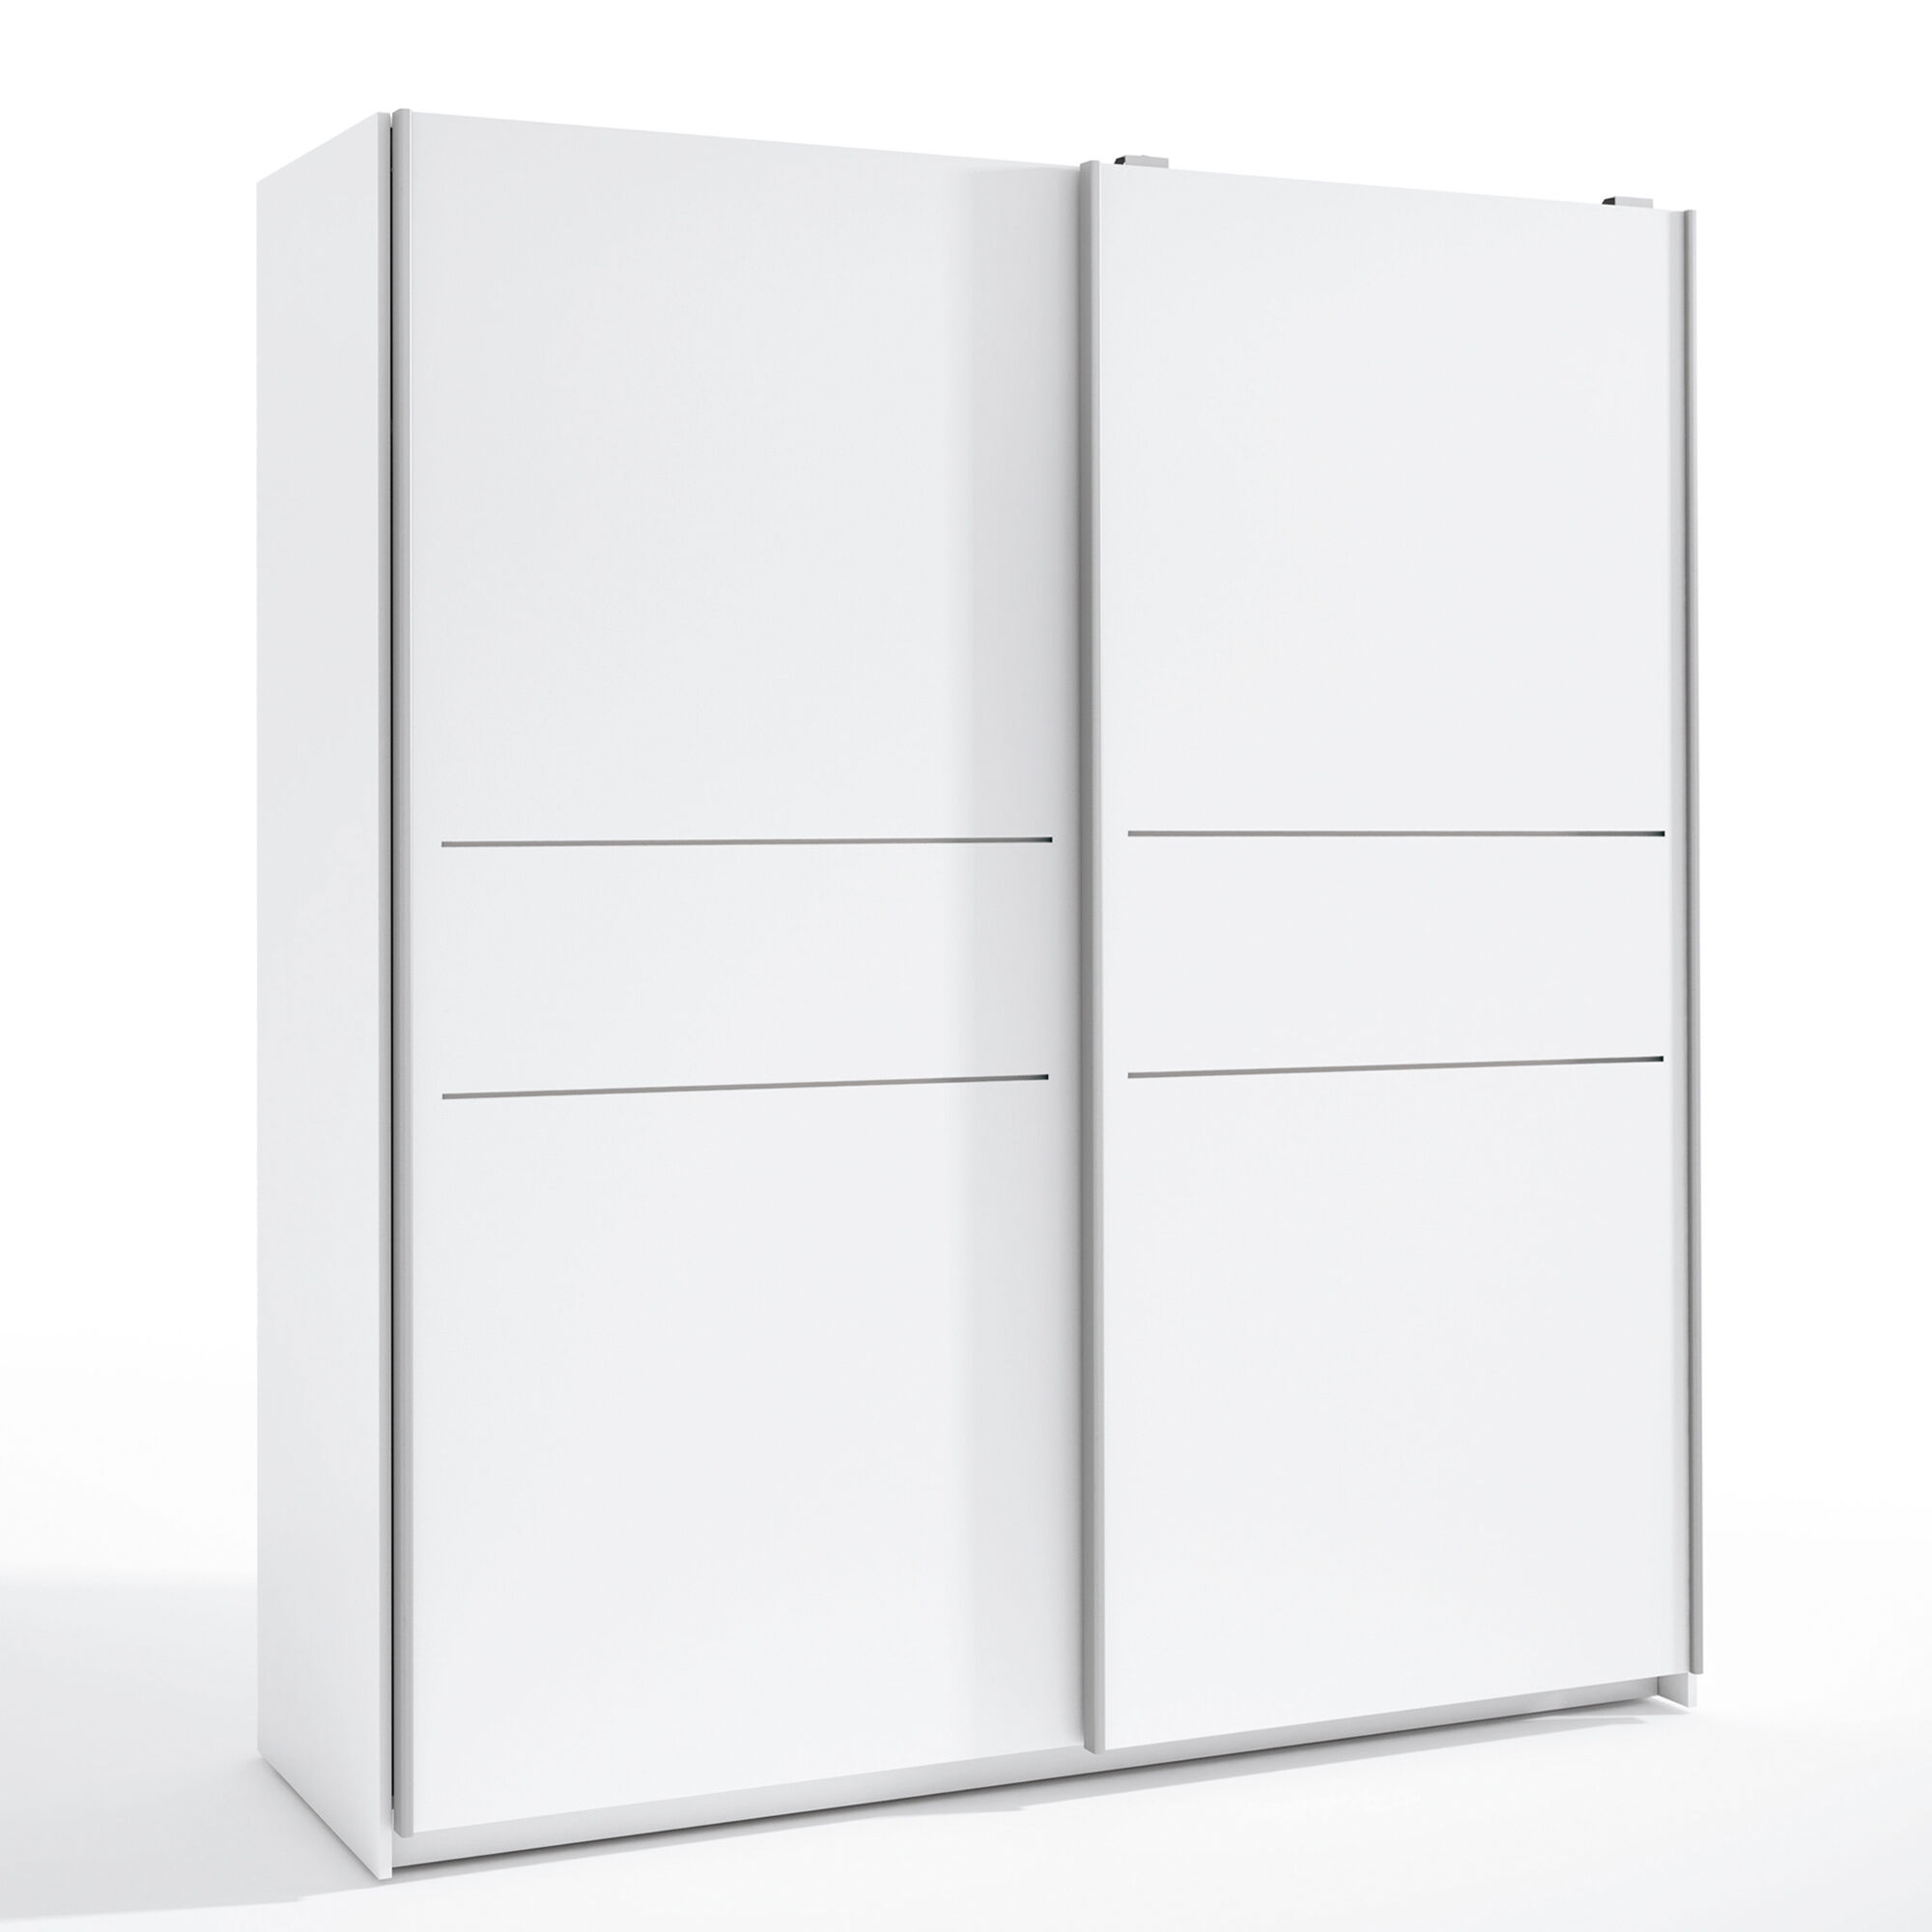 HOMN Armario ropero 2 puertas correderas color blanco, 181,5 ancho